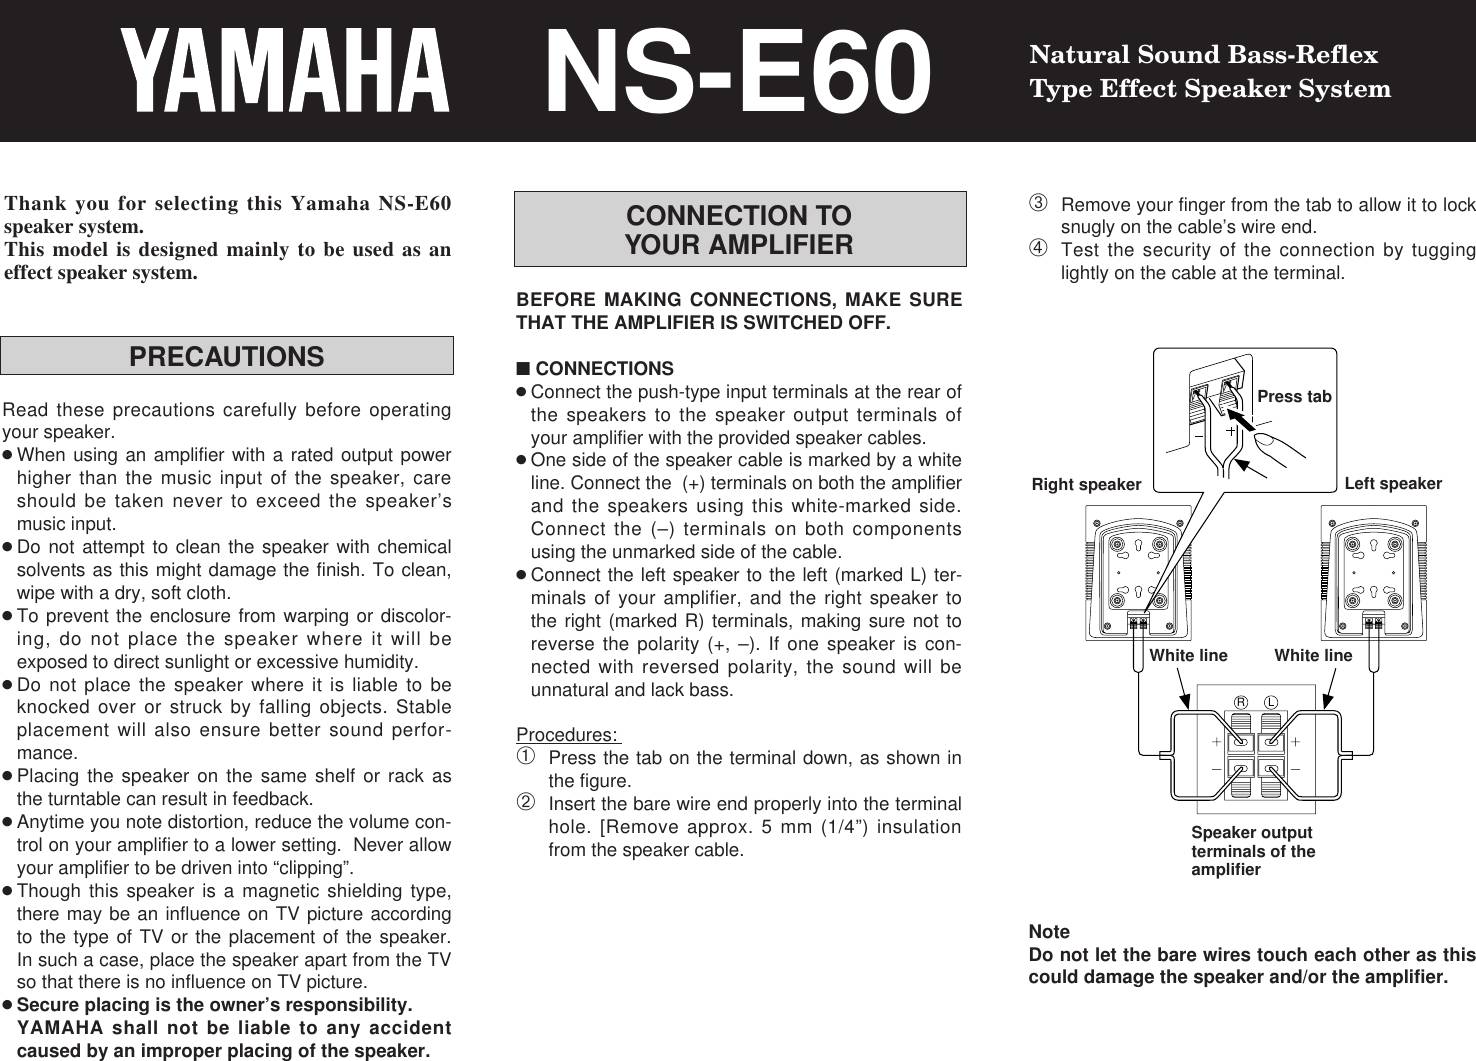 Yamaha NS-E60